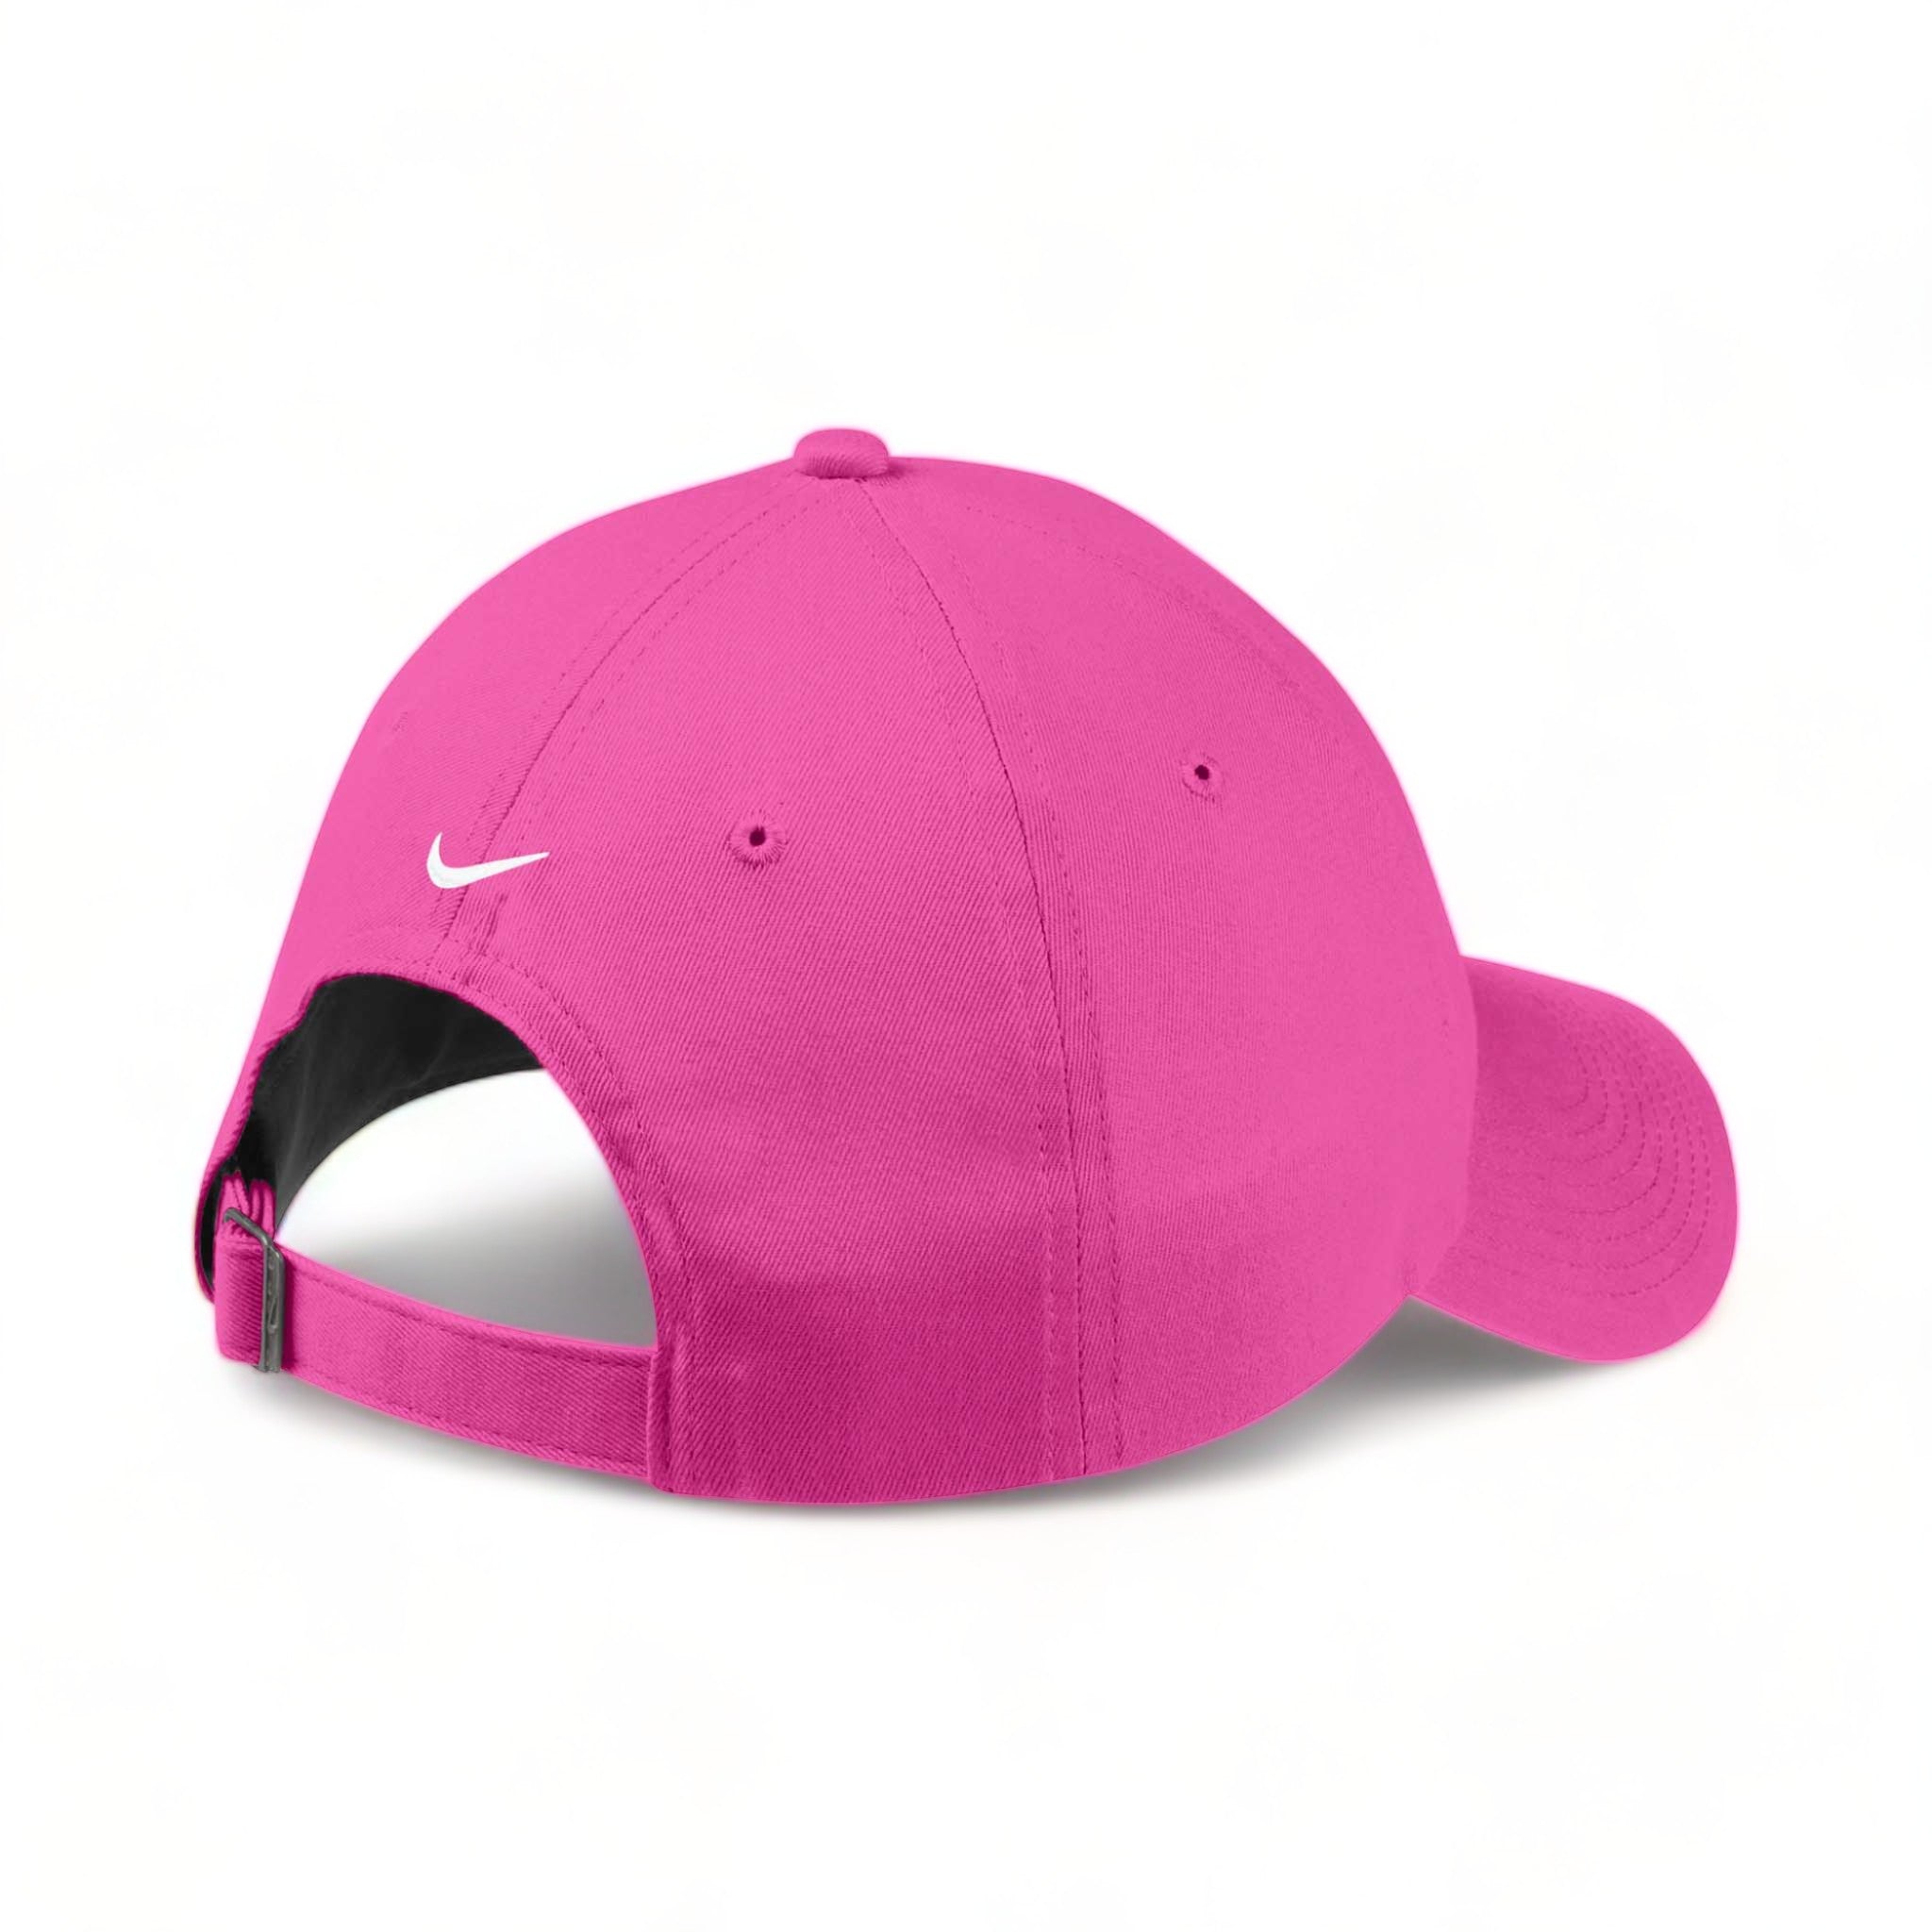 Back view of Nike NKFB6449 custom hat in vivid pink